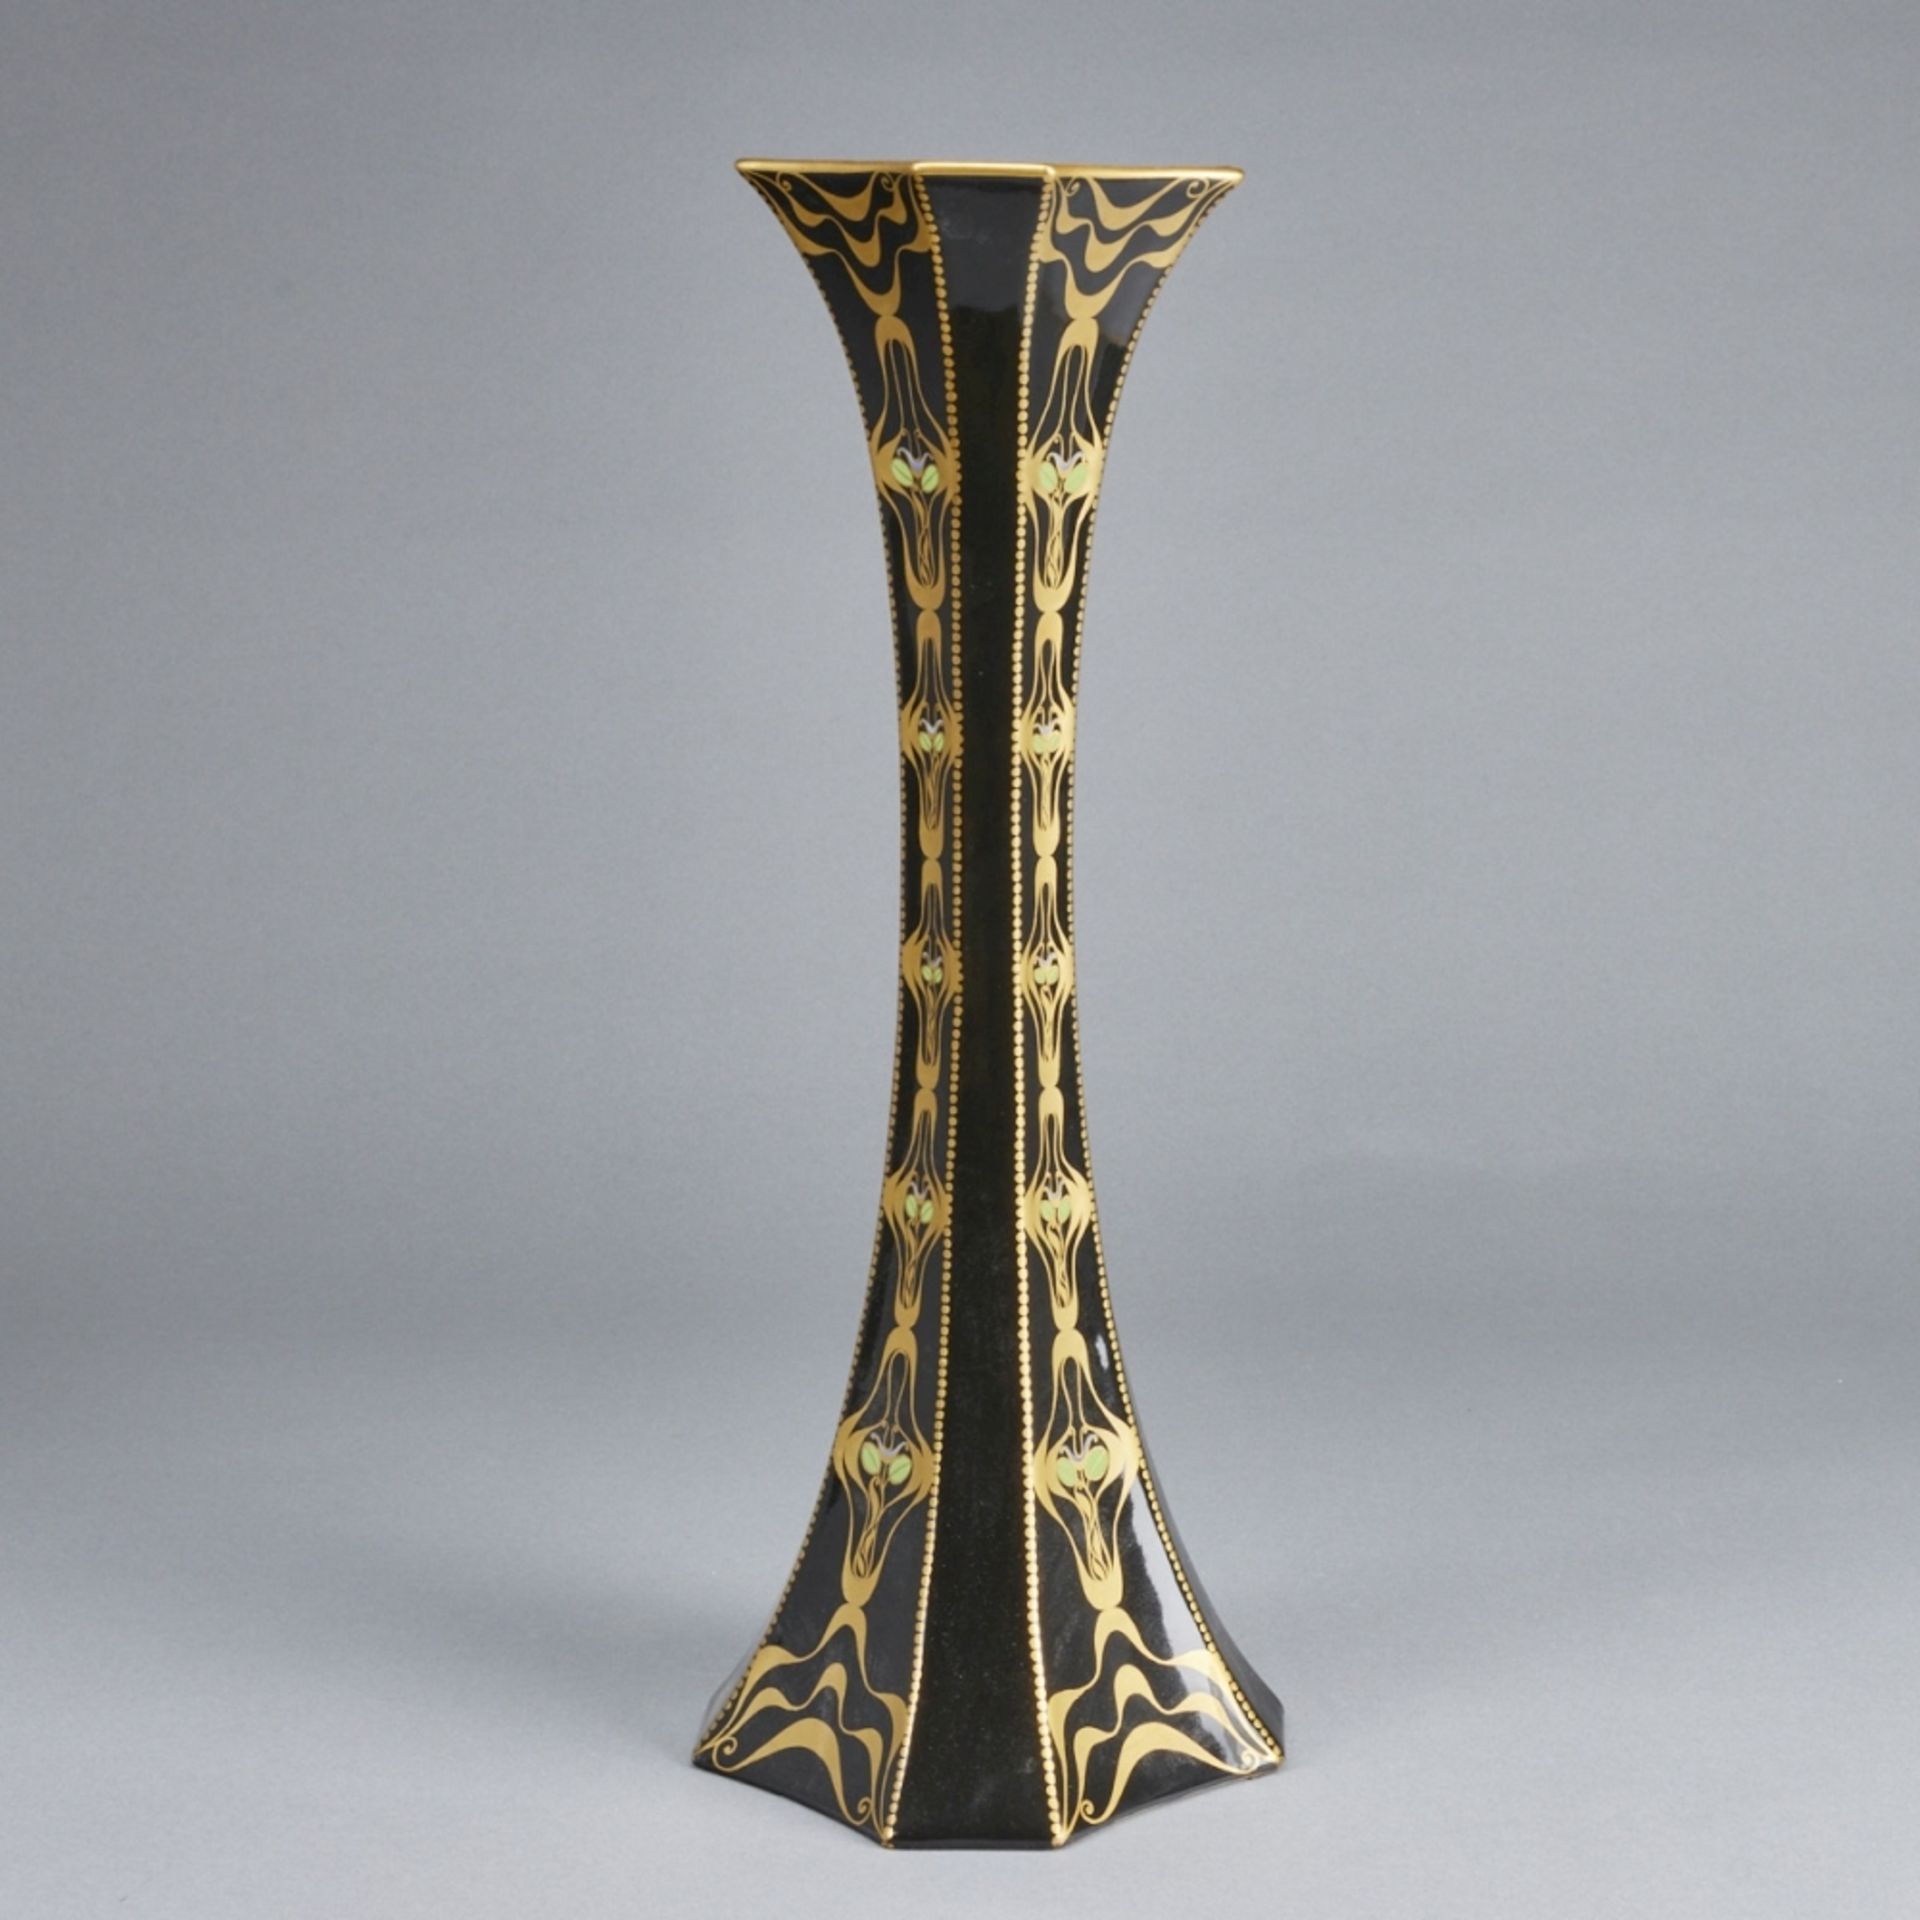 Achteckige Vase aus der SERAPIS FAYENCE Serie. Ernst Wahliss, Wien um 1911. - Bild 2 aus 2